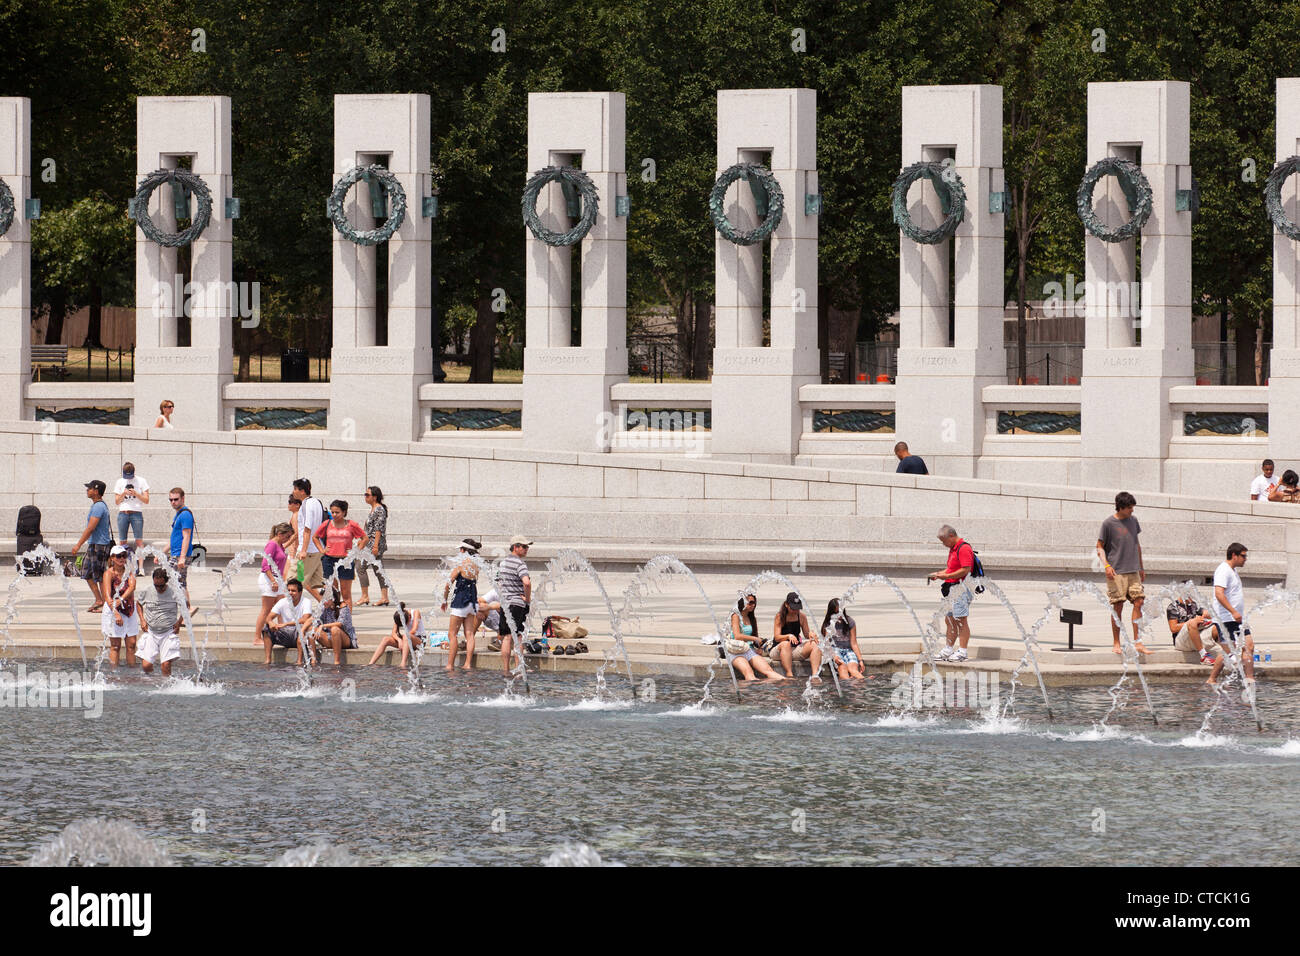 Visitatori dunk i loro piedi nella fontana, trovando rifugio dal caldo estivo, mentre la visita al Memoriale della Seconda guerra mondiale Foto Stock